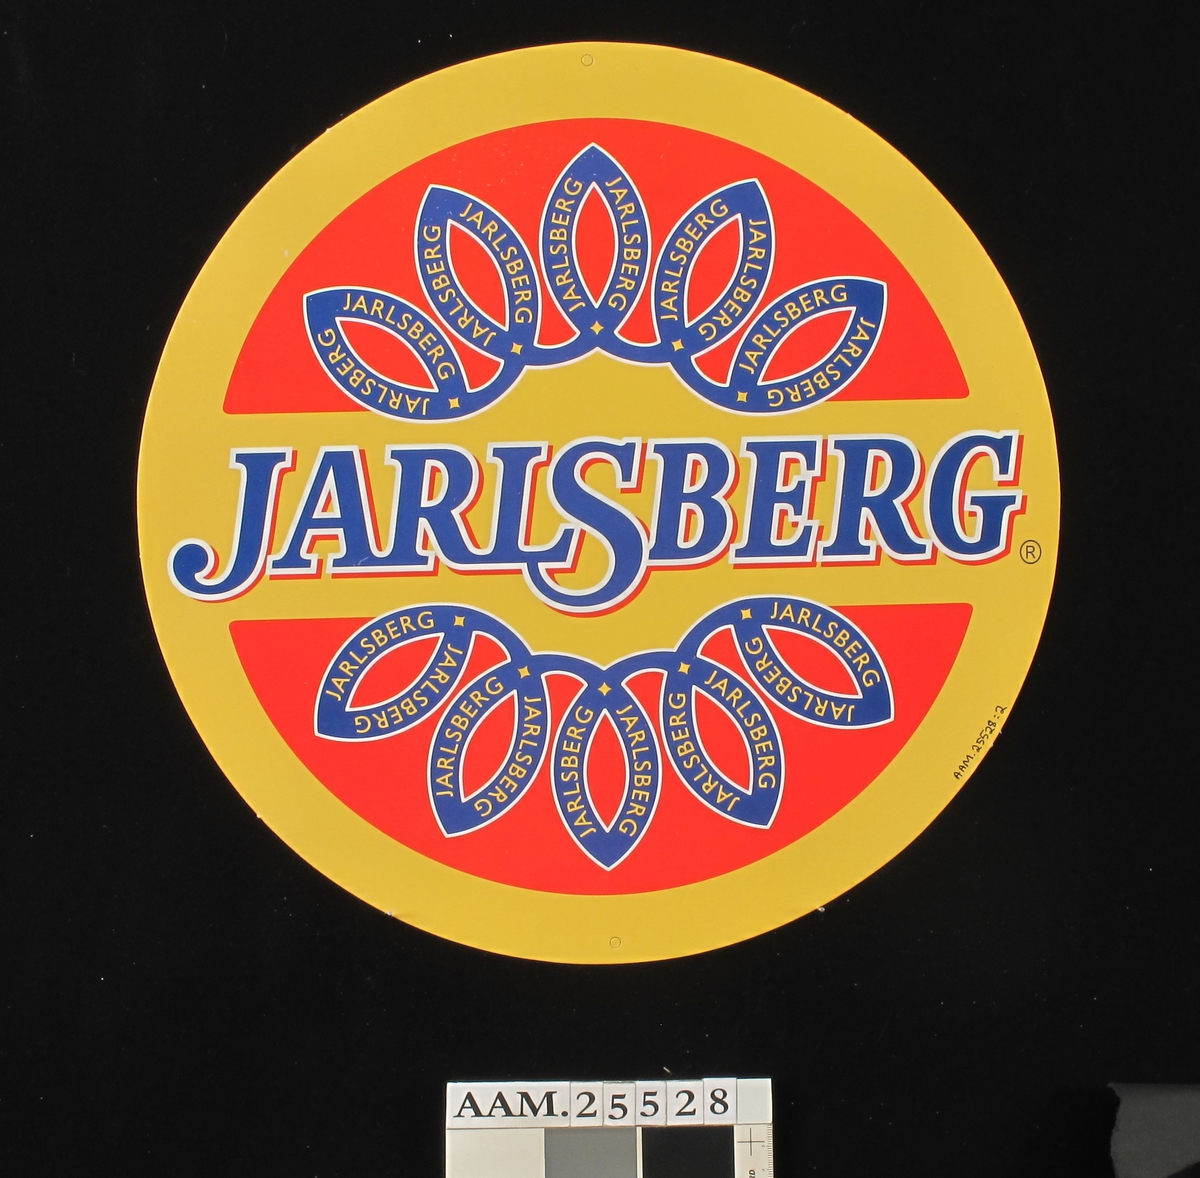 Rund Jarsberg-ost / fargefoto av ostestykke og ostekniv.